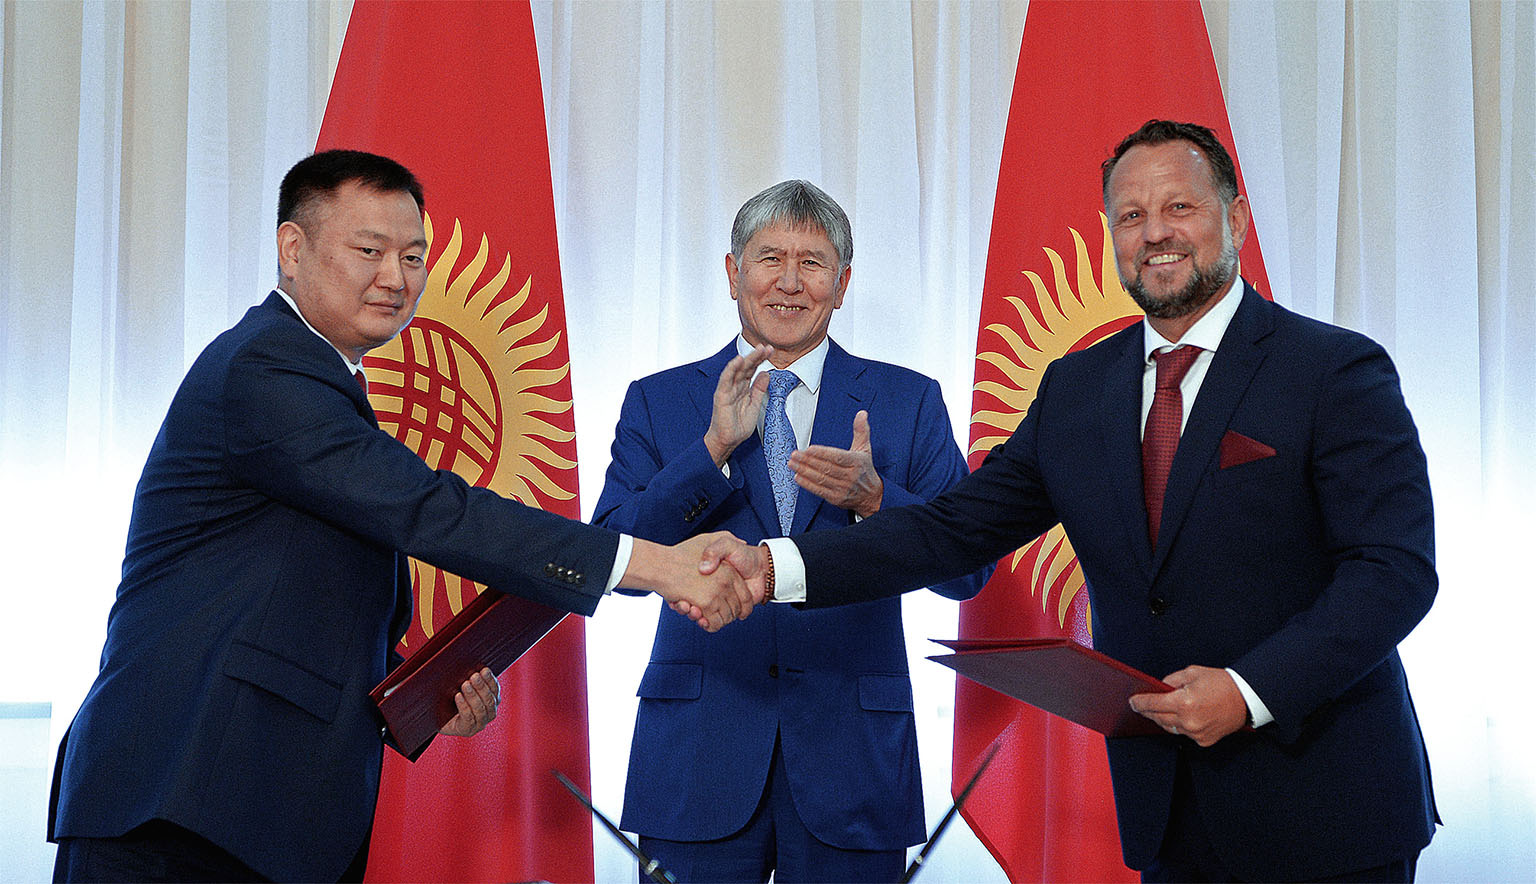 Smlouvu o výstavbě vodních elektráren za kyrgyzskou vládu podepisoval šéf přes energetiku Dujšenbek Zilalijev (vlevo). Třese si rukou s majitelem Liglass Trading Michaelem Smelíkem, uprostřed kyrgyzský prezident Almazbek Atambajev.